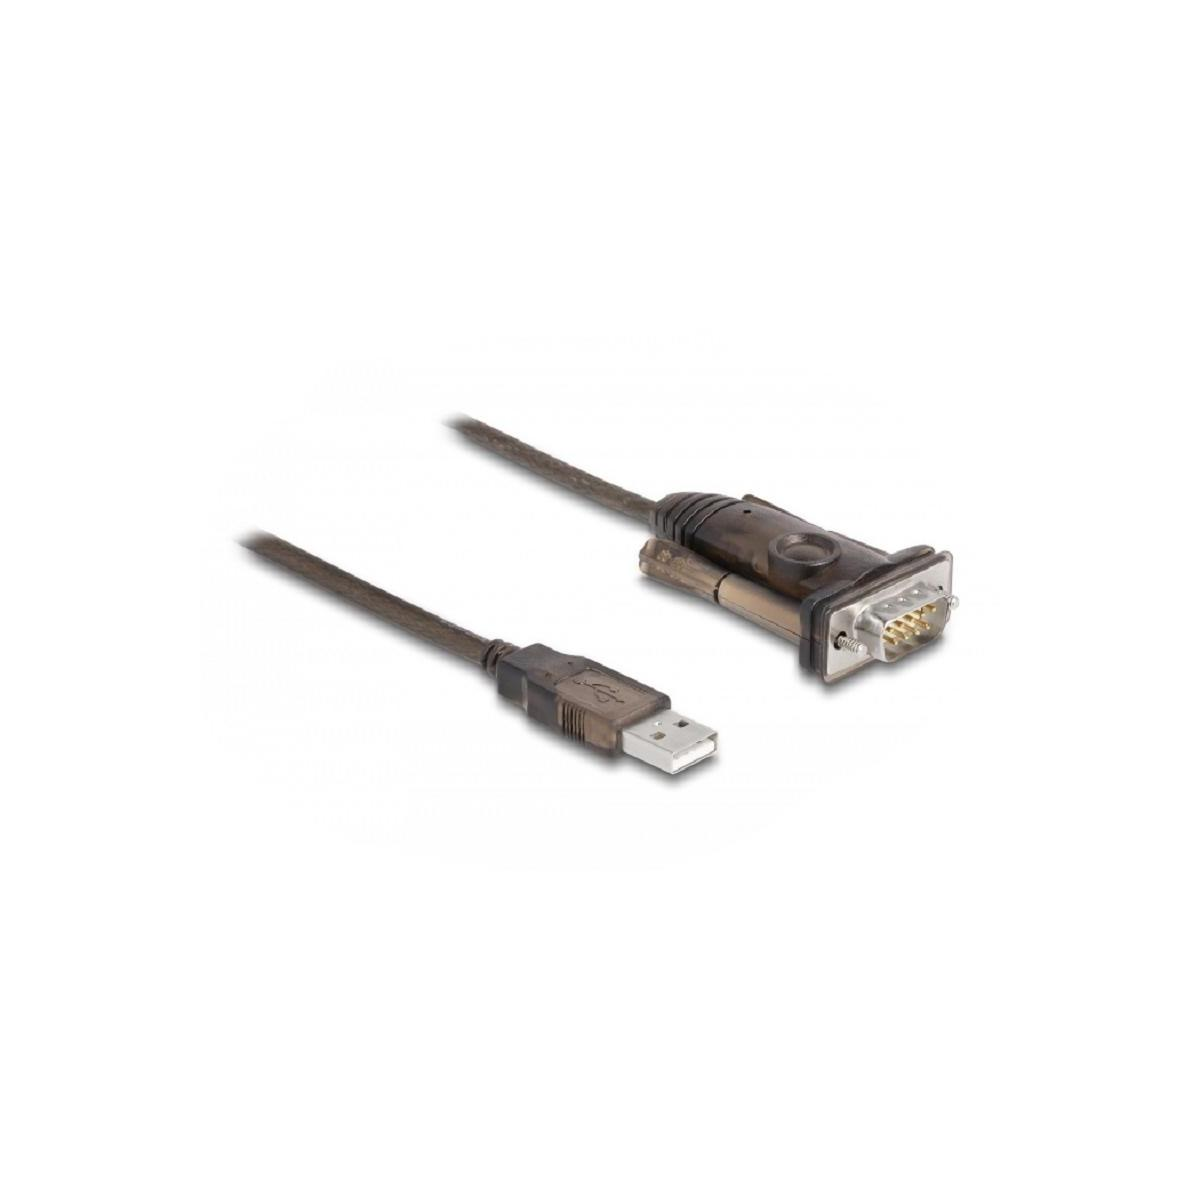 DELOCK DELOCK Adapter zu Peripheriegeräte Adapter, Schwarz, Zubehör durchsichtig & USB2.0 Typ-A Kabel 1xSeriell 